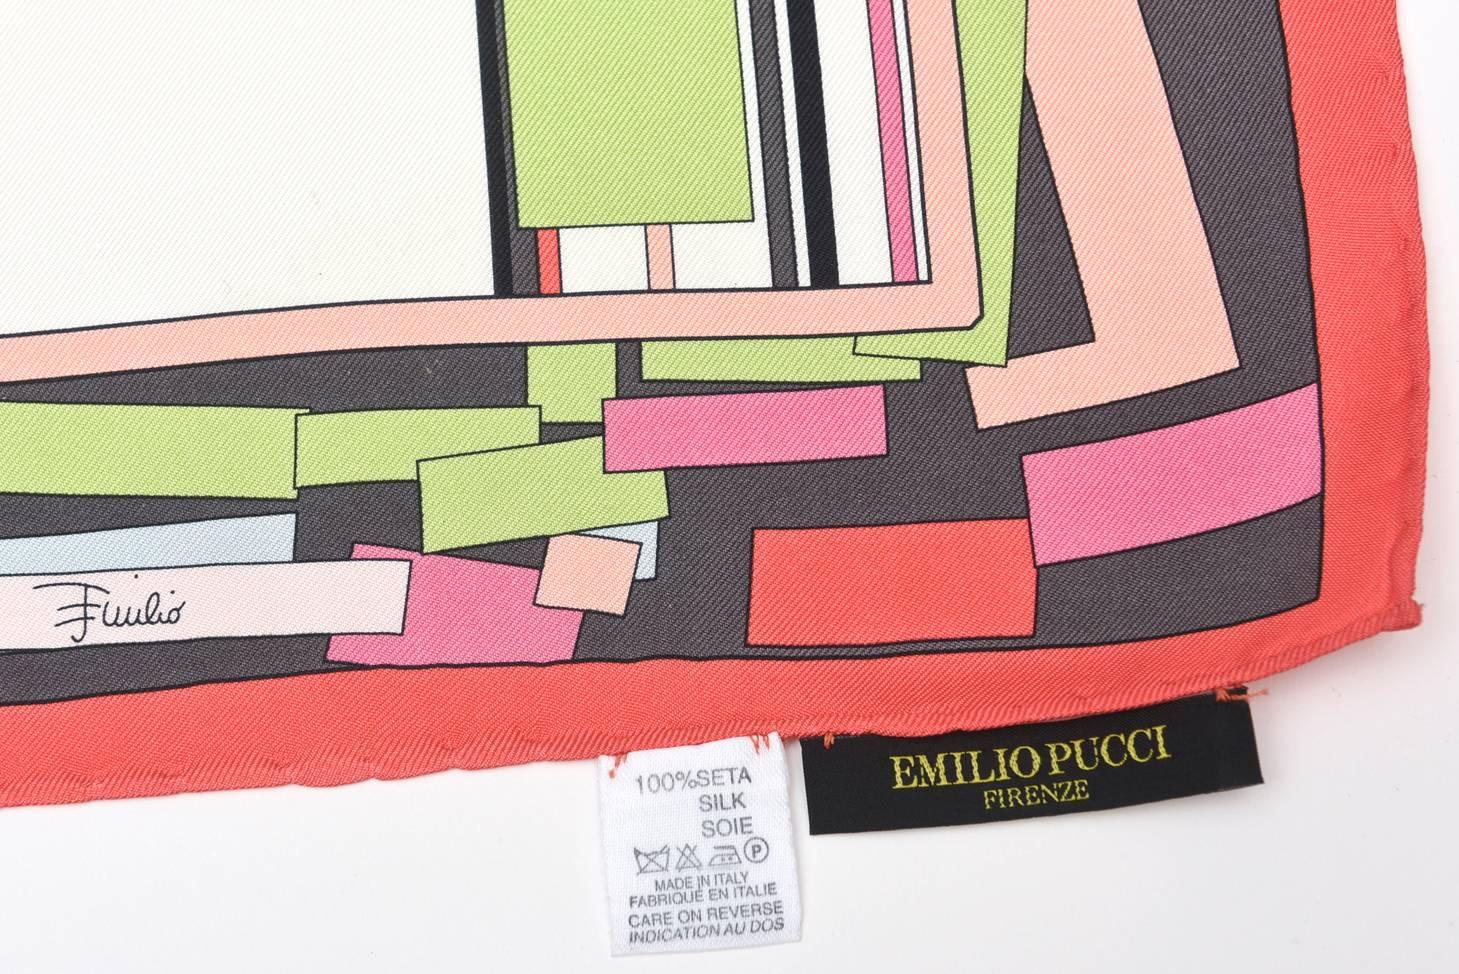  Dieser wunderschöne mehrfarbige abstrakte Emilio Pucci Schal aus Seide stammt aus den 80er Jahren. Die Farben sind Rosatöne, helles Grün, Korallenrosa, Schwarz, Weiß und Hellblau.
